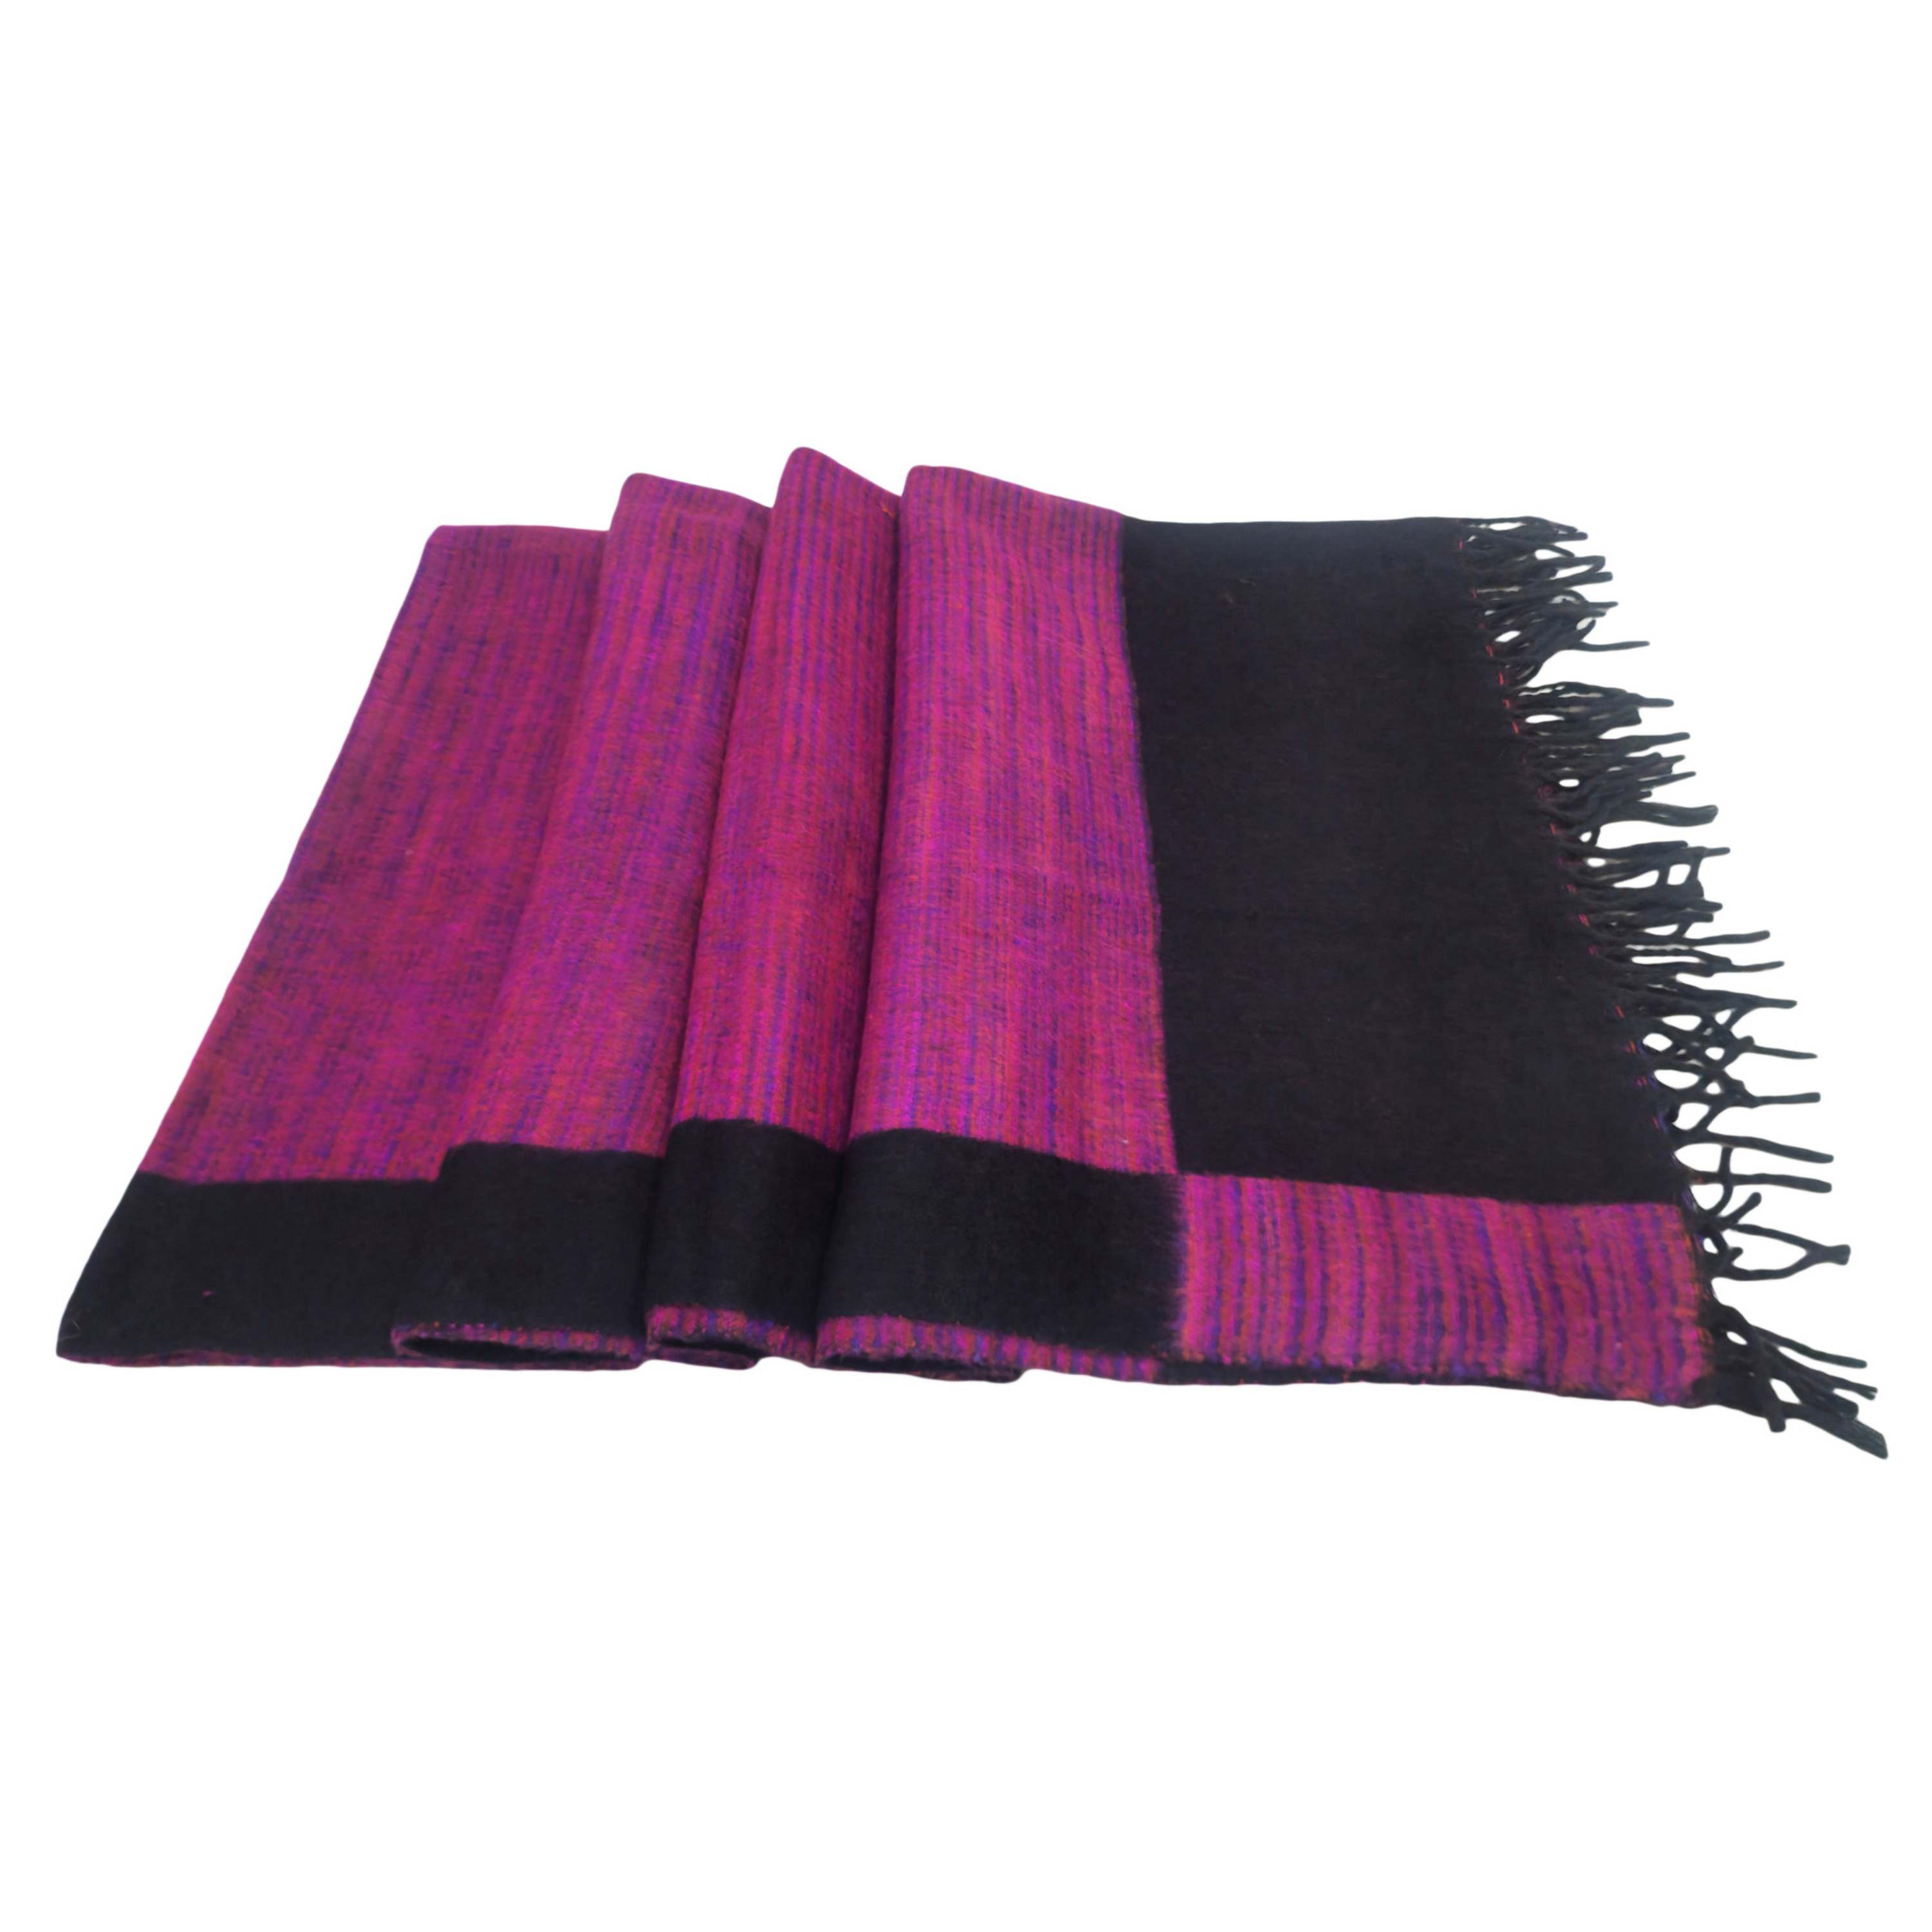 Tibet Blanket, Acrylic Woolen Blanket, <span Style=